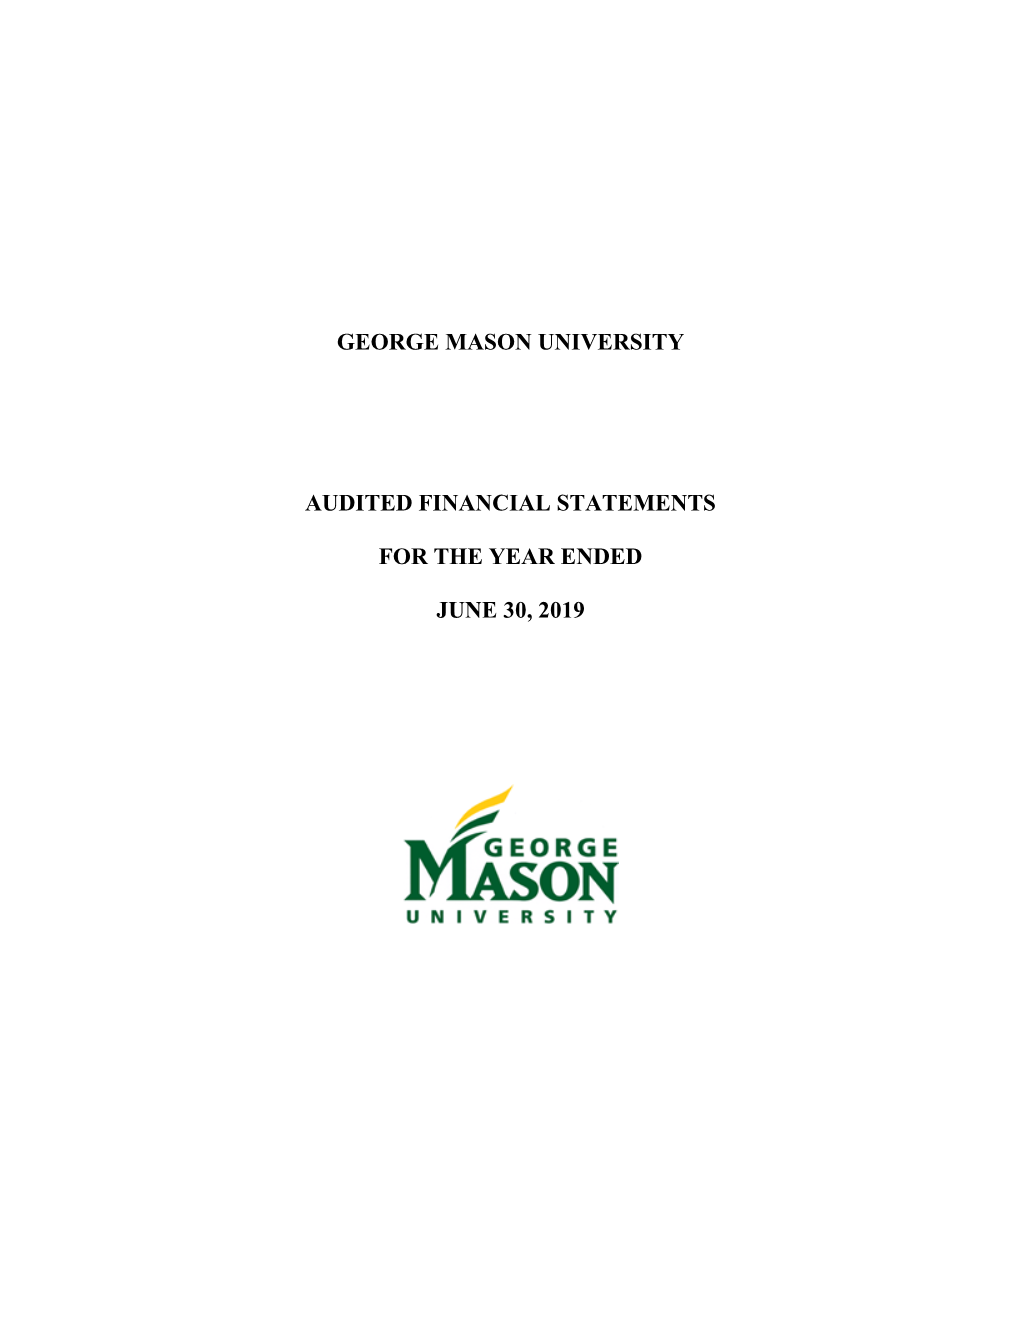 George Mason University Audited Financial